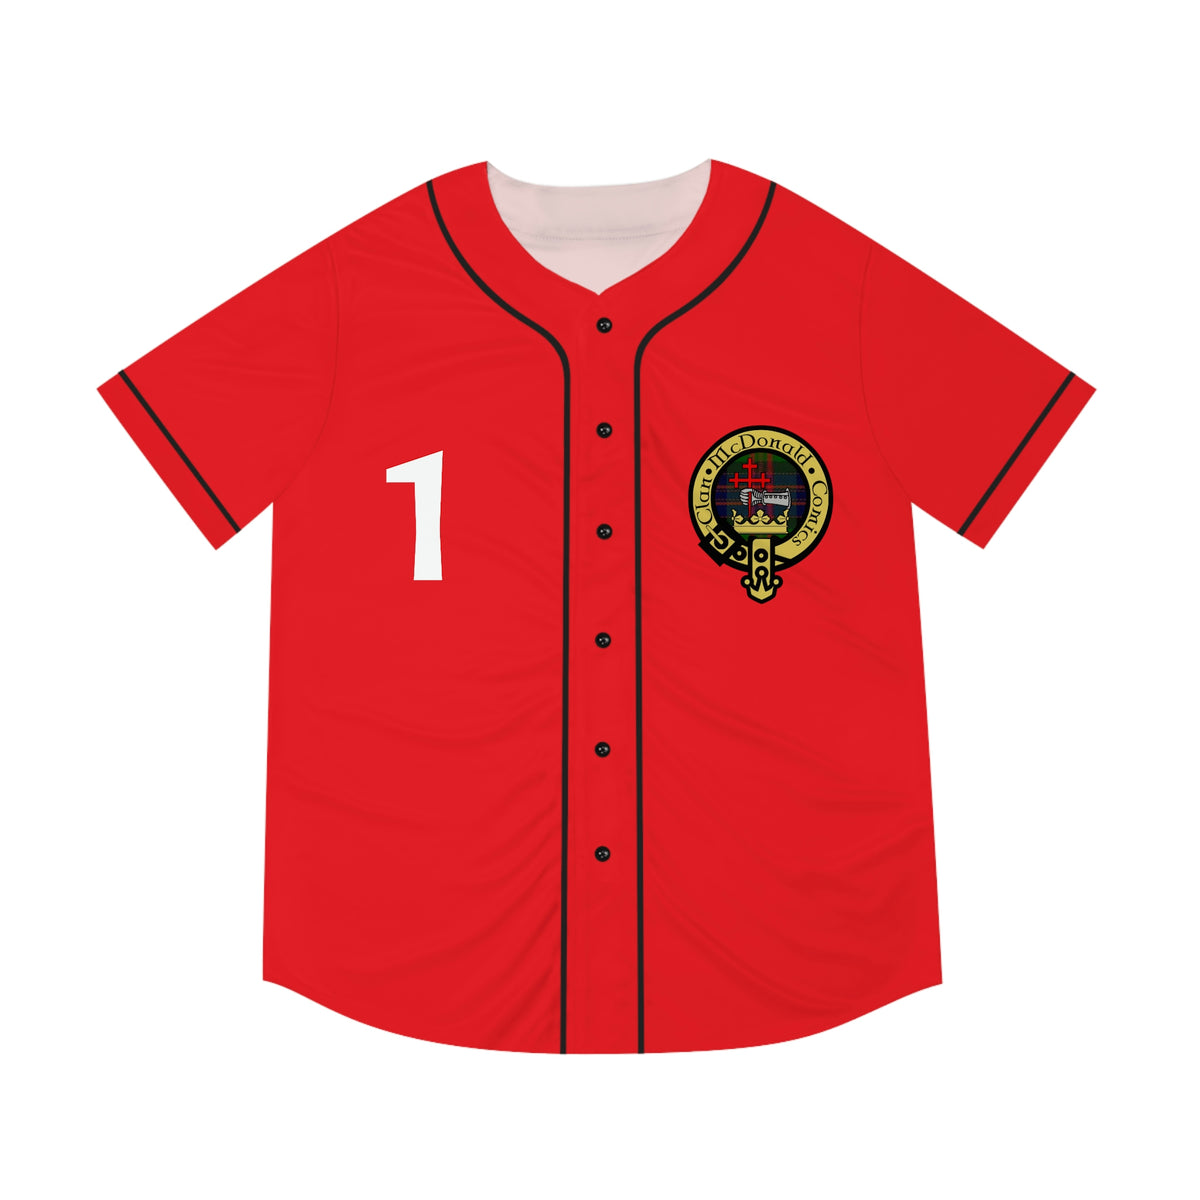 Printify Men's Baseball Jersey (aop) S / White